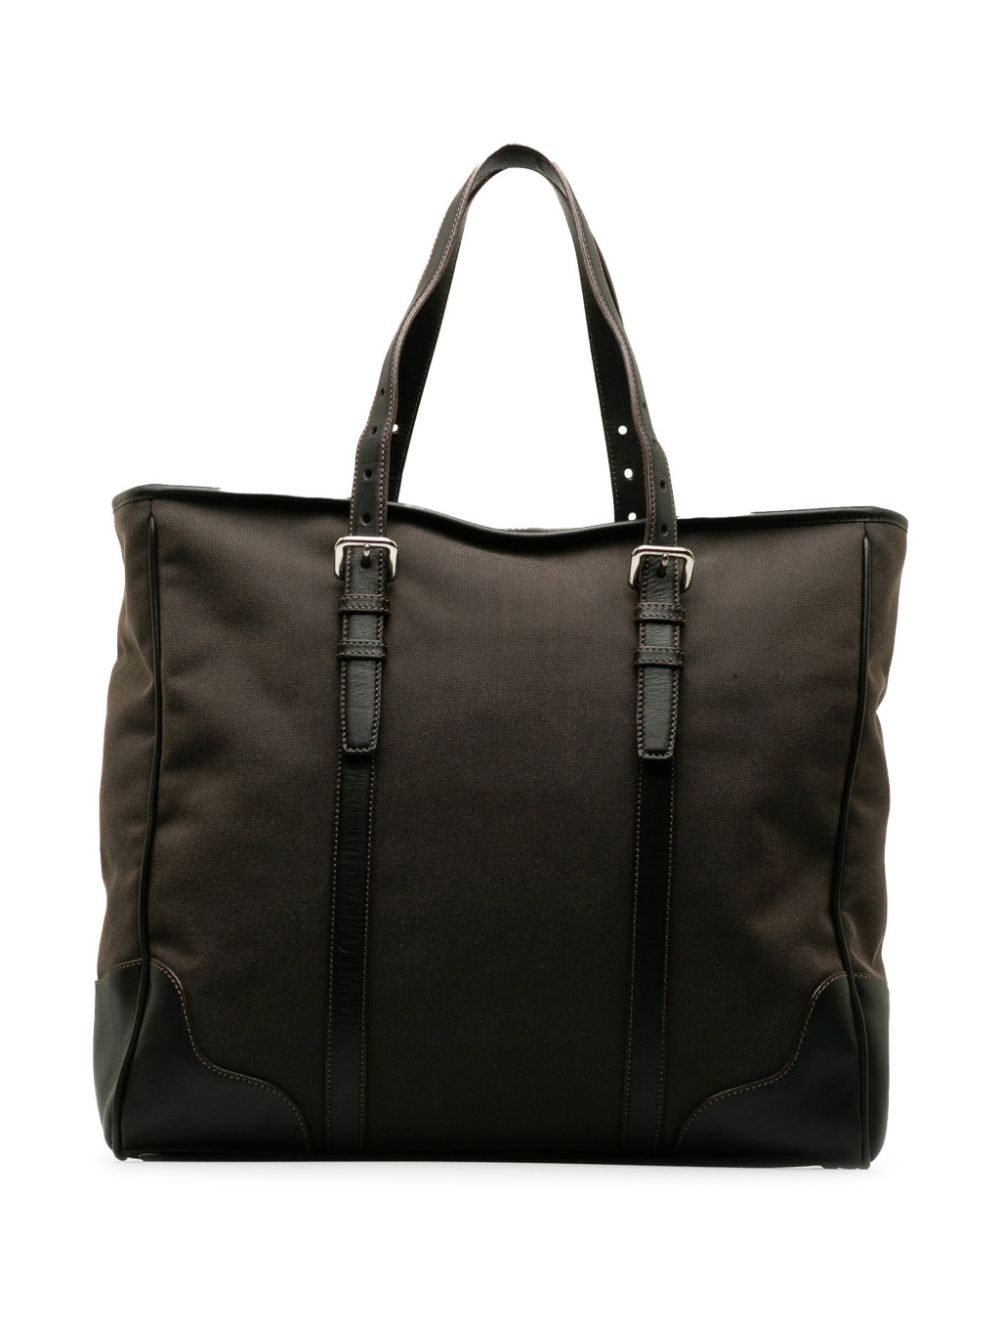 Pre-owned Prada 2010-2020 Canapa Tote Bag In Brown